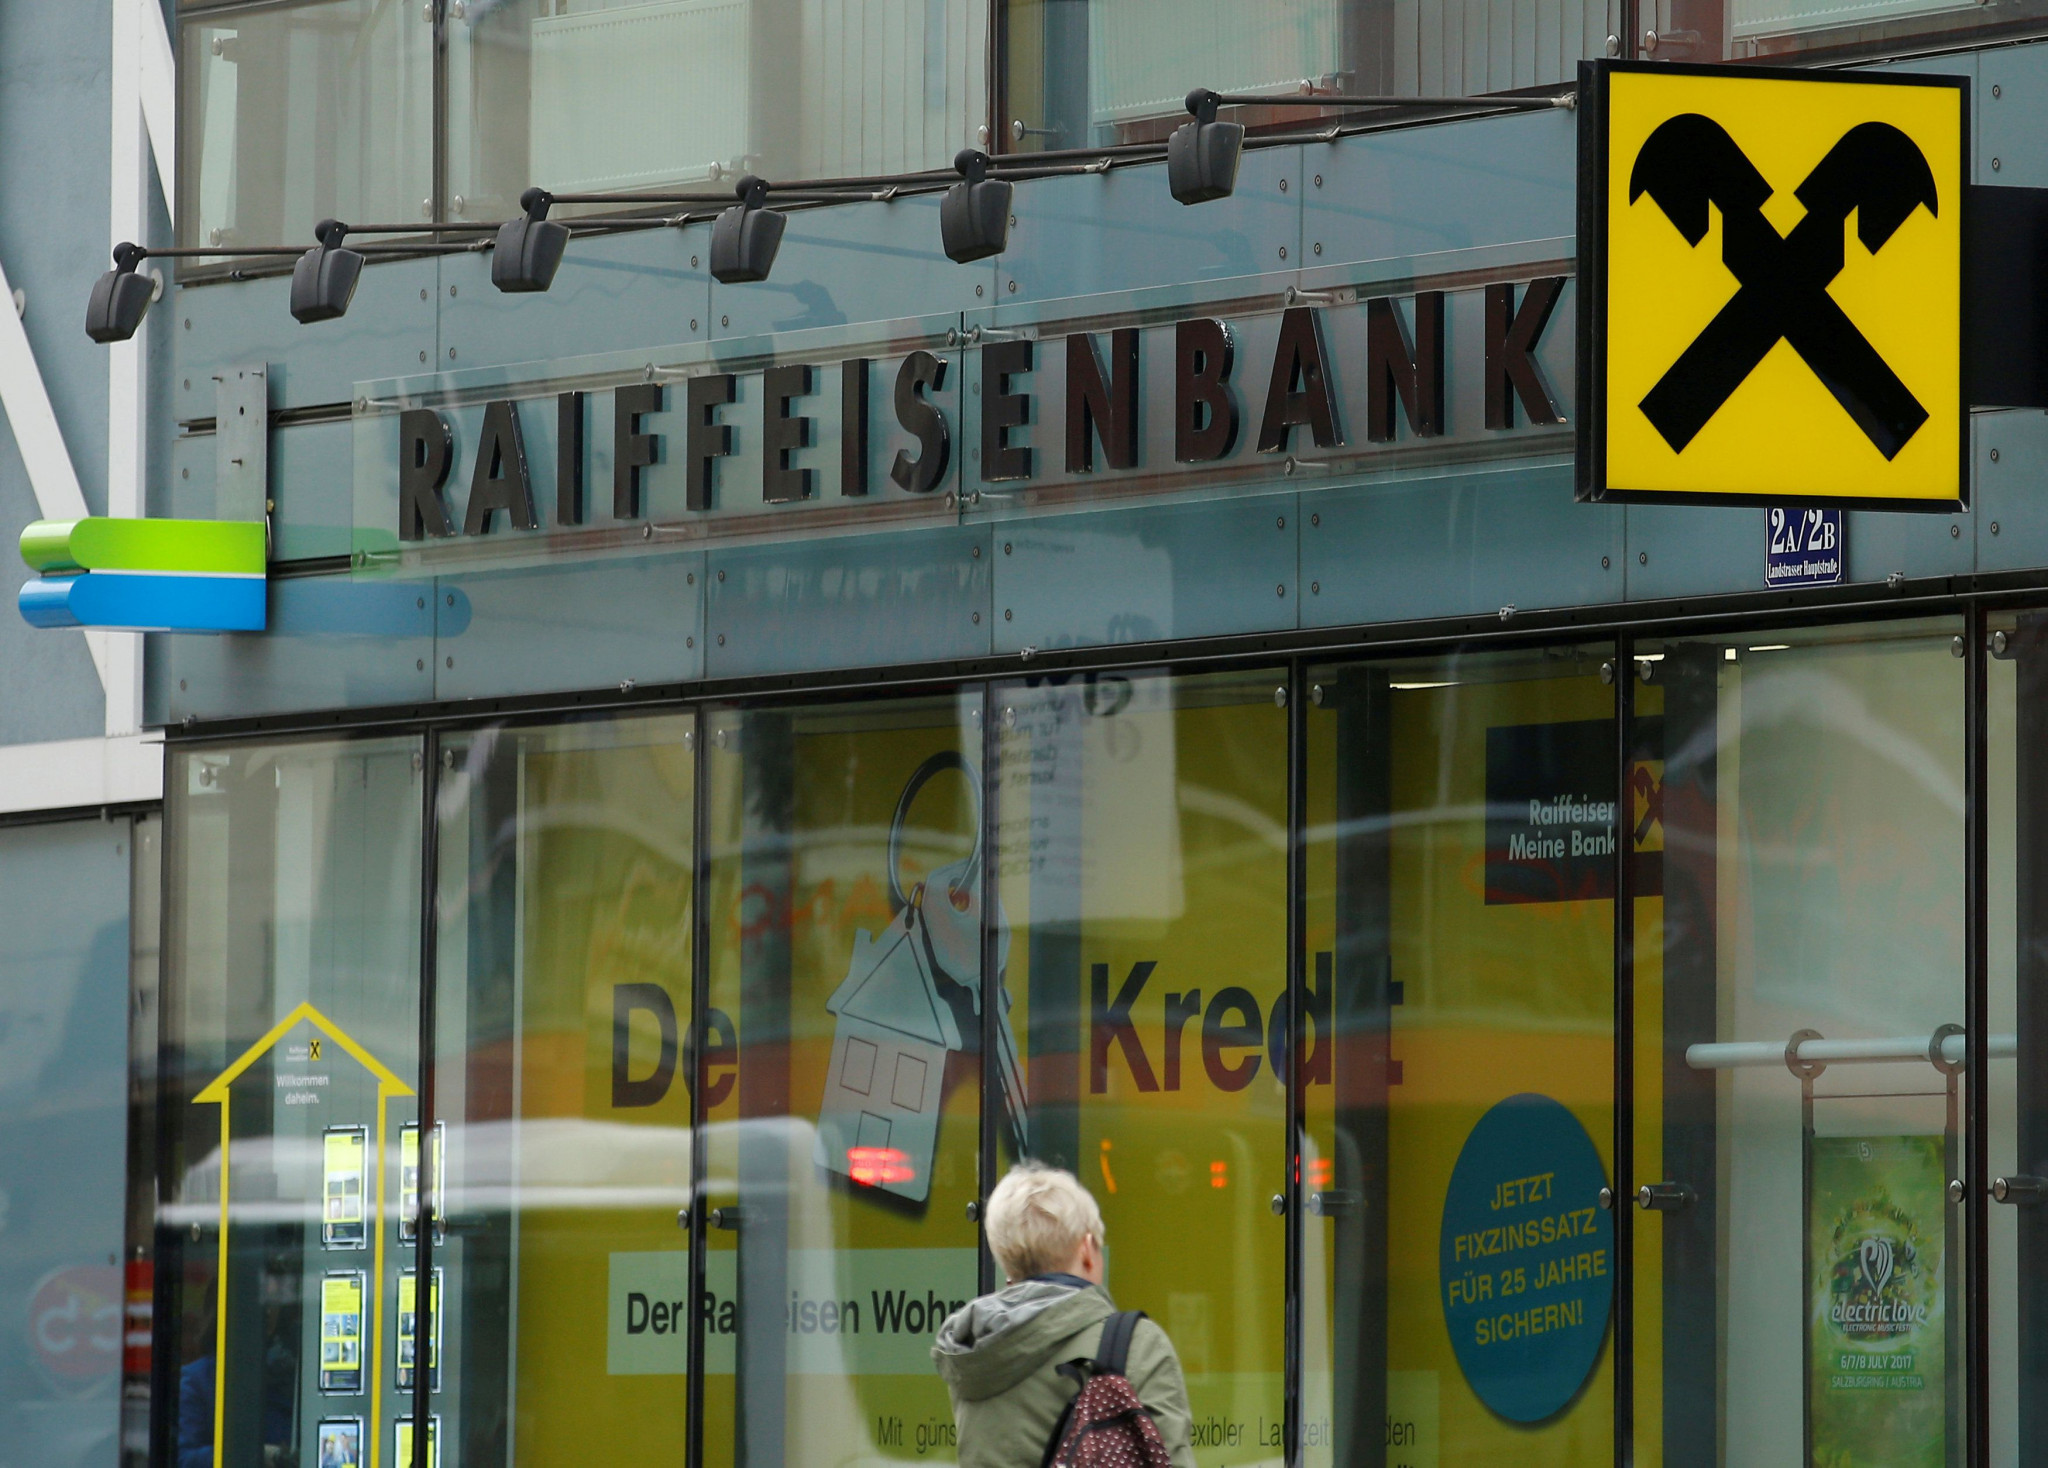 Rakúska banka bola pod drobnohľadom finančných úradov pre pranie špinavých
peňazí už od roku 2016.